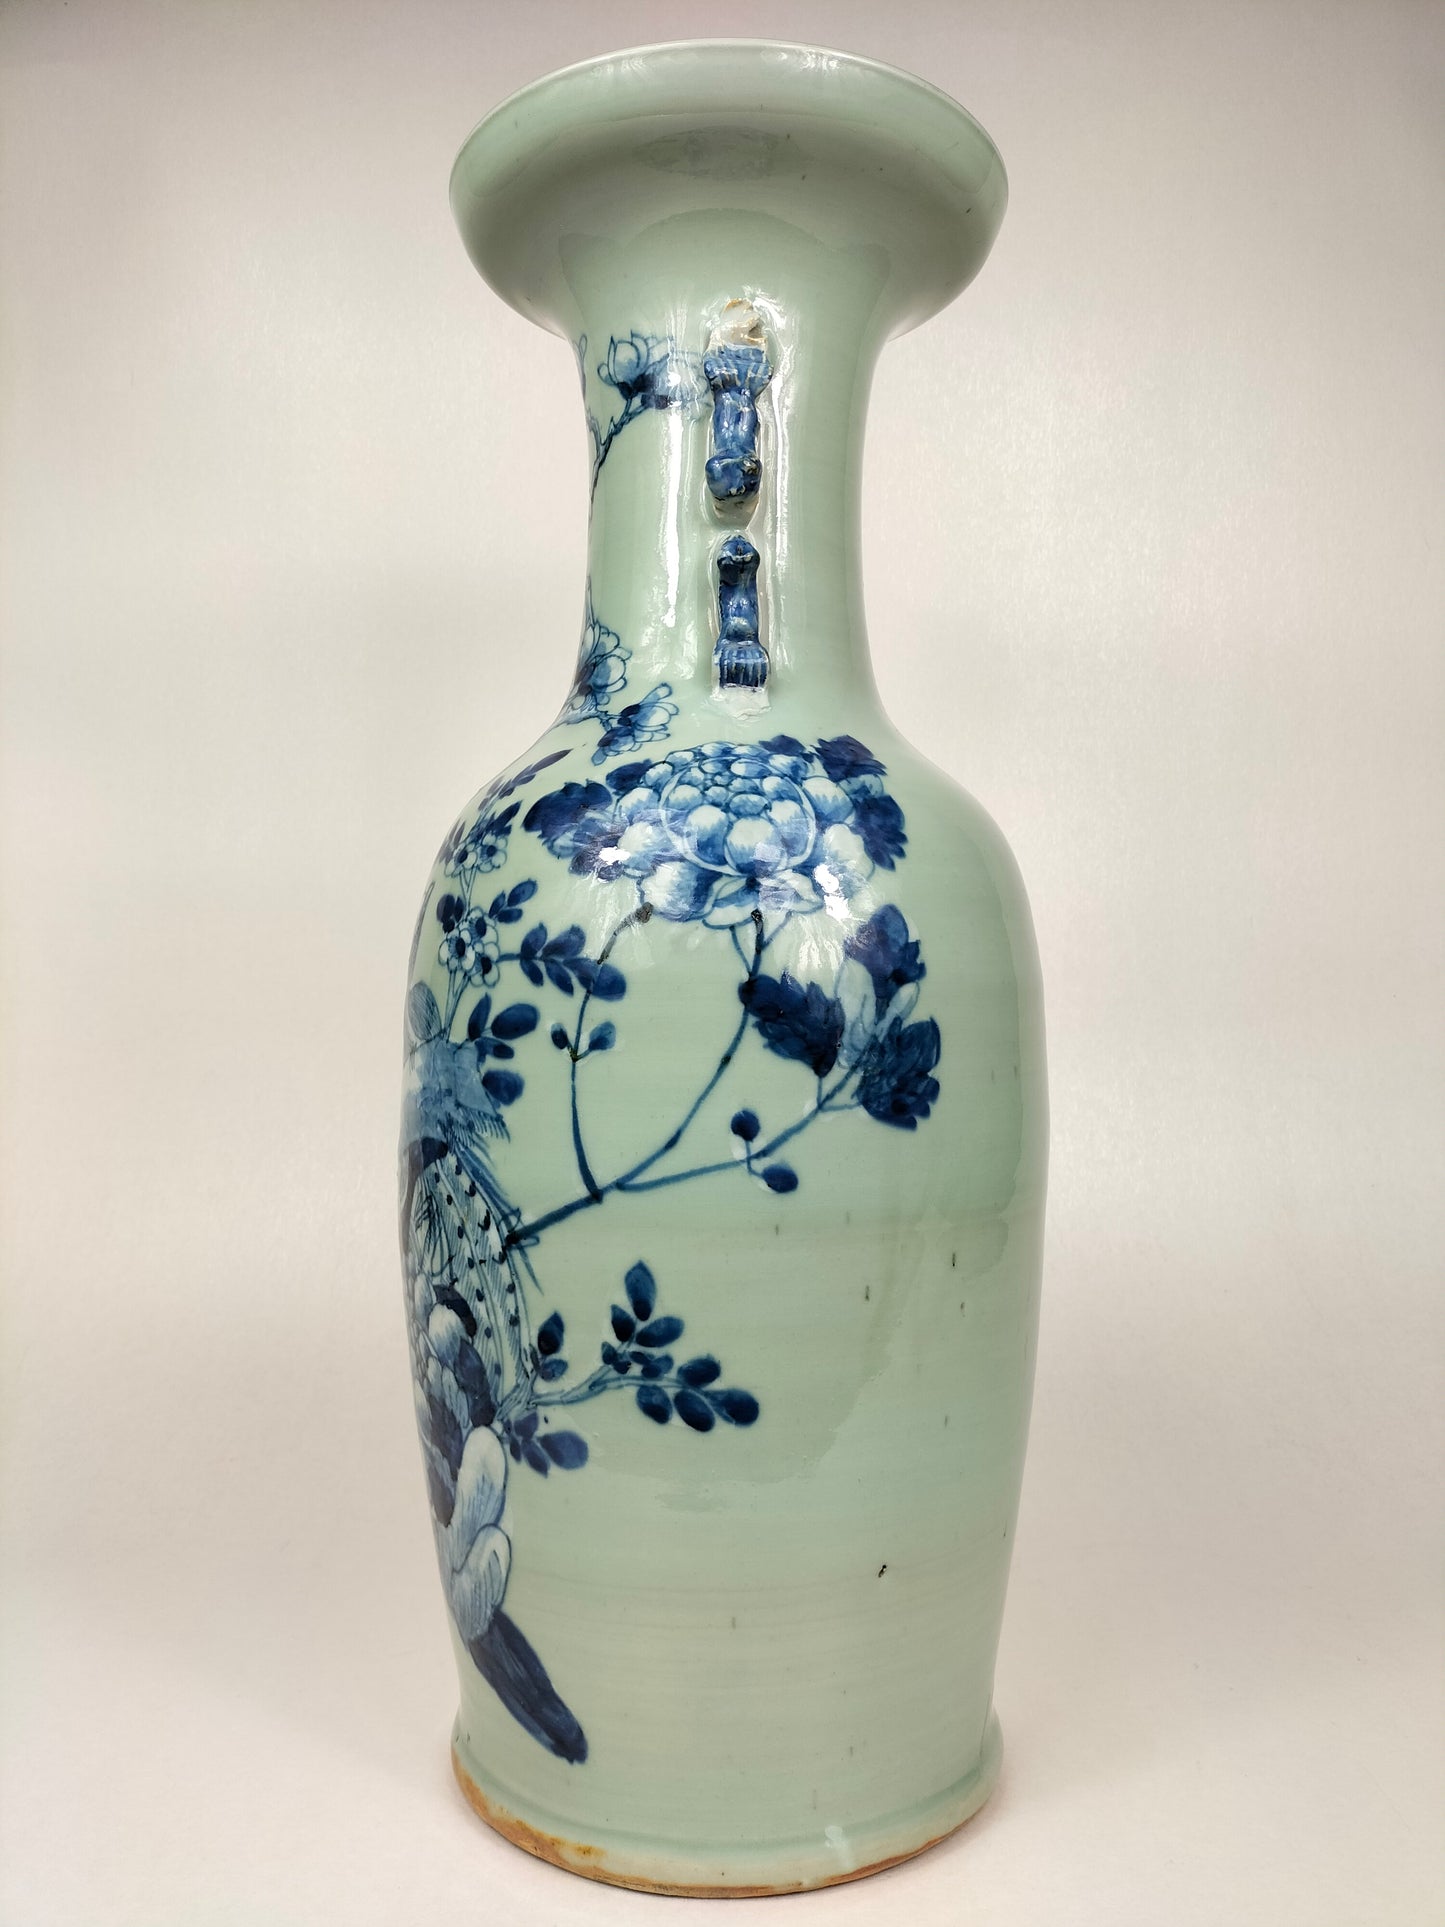 大型古董中国青瓷花瓶//清朝 - 19 世纪